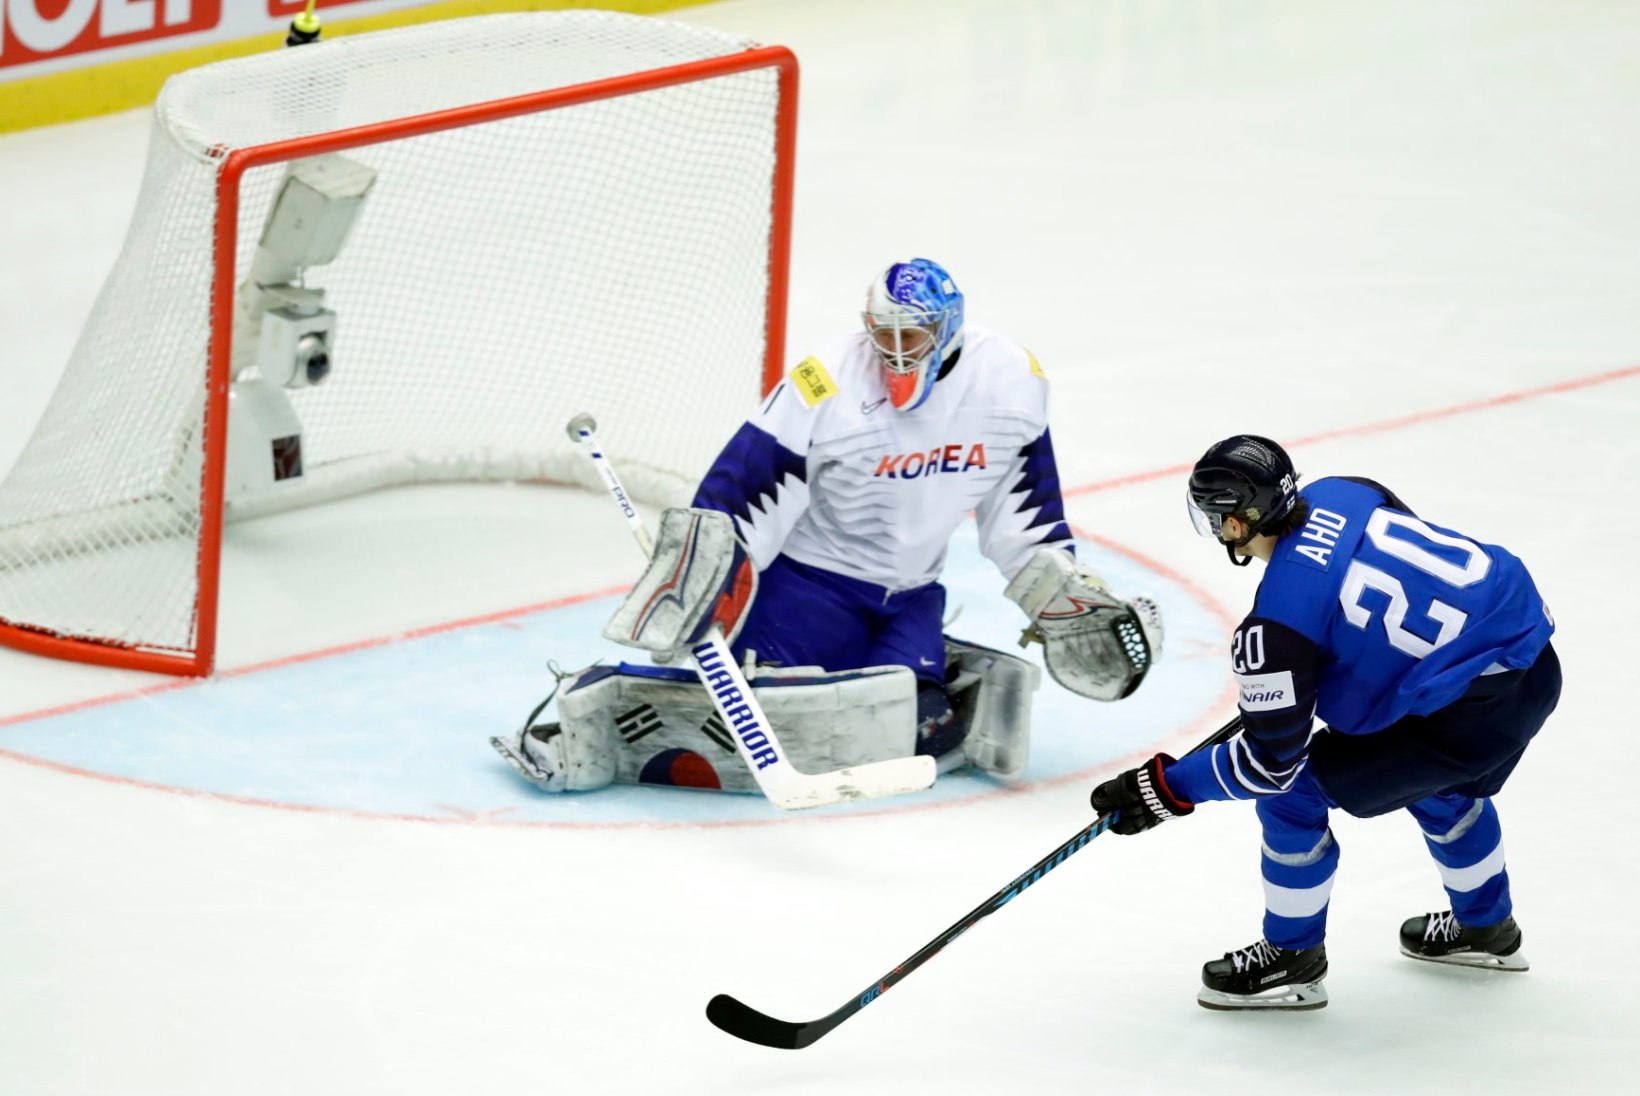 Soome jäähokikoondis alustas purustustööga ning kordas MMi rekordit